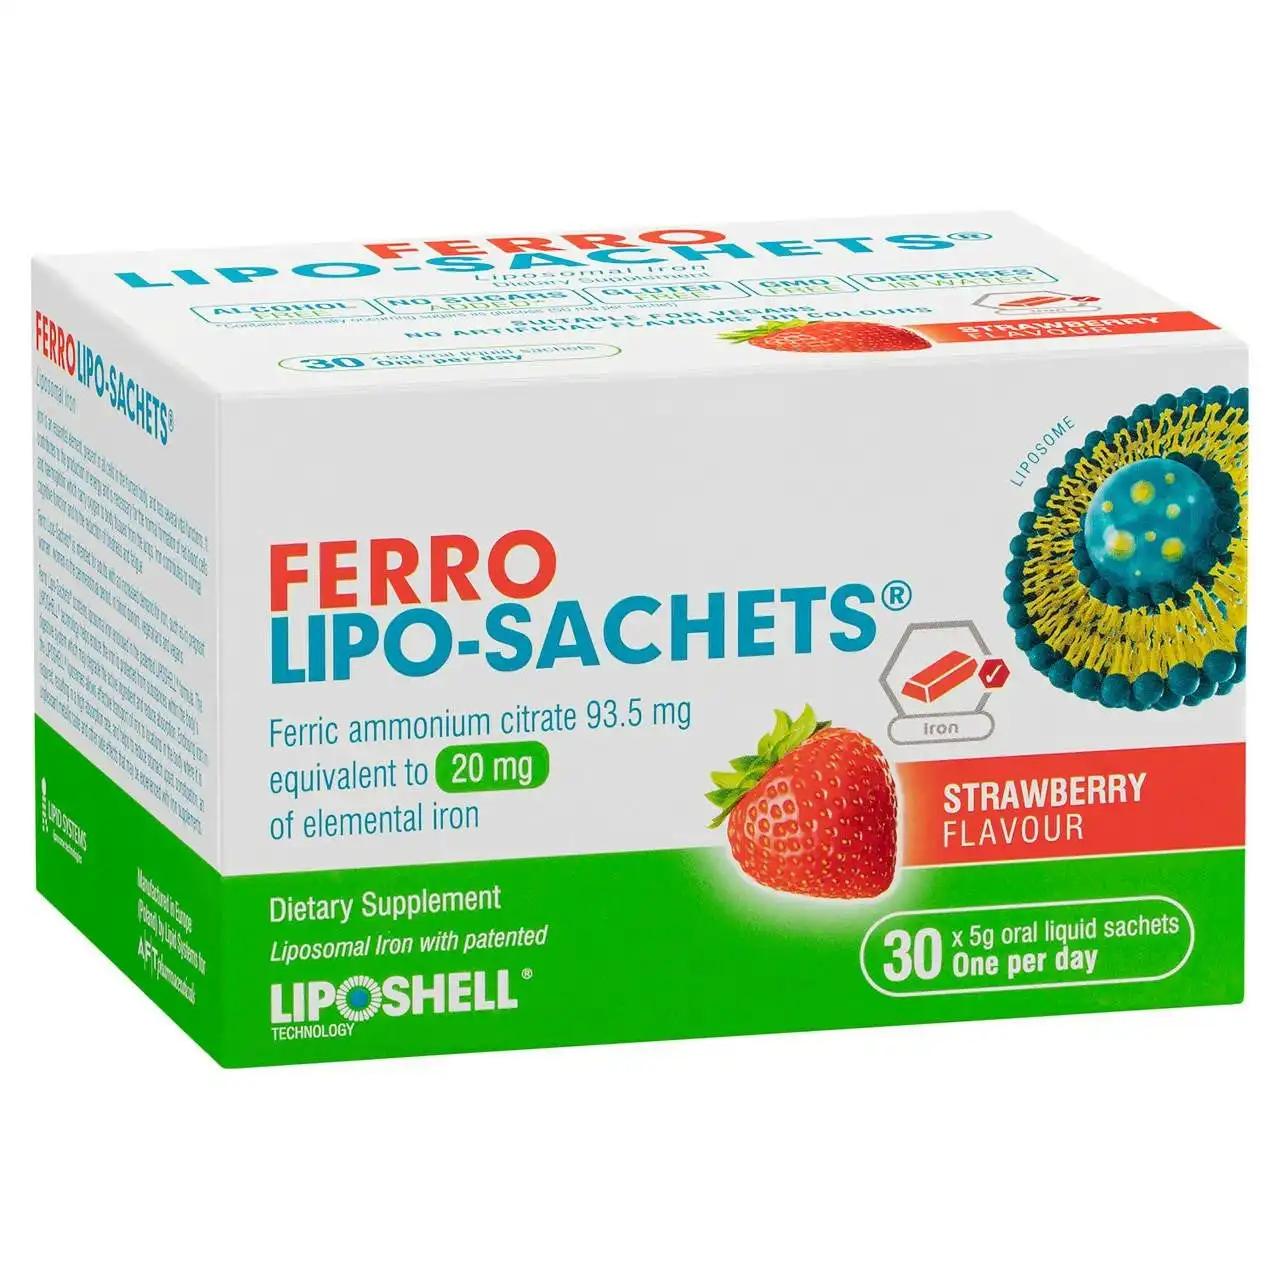 Ferro Lipo-Sachets Strawberry Flavour 30 Sachets